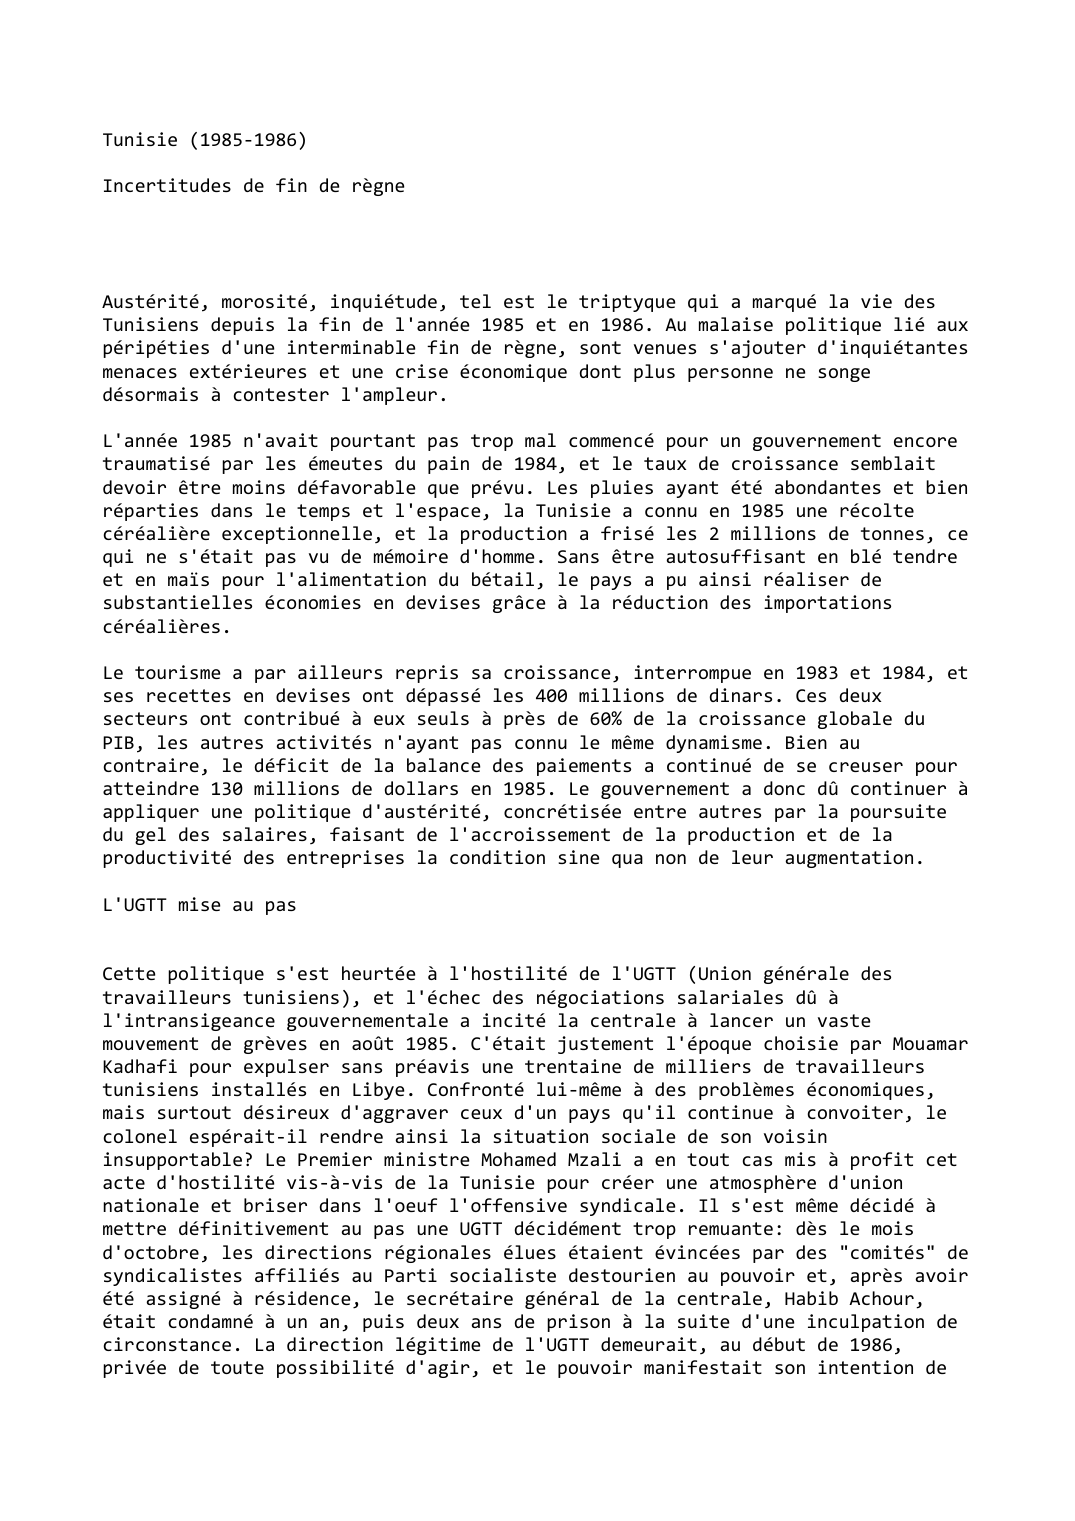 Prévisualisation du document Tunisie (1985-1986)

Incertitudes de fin de règne